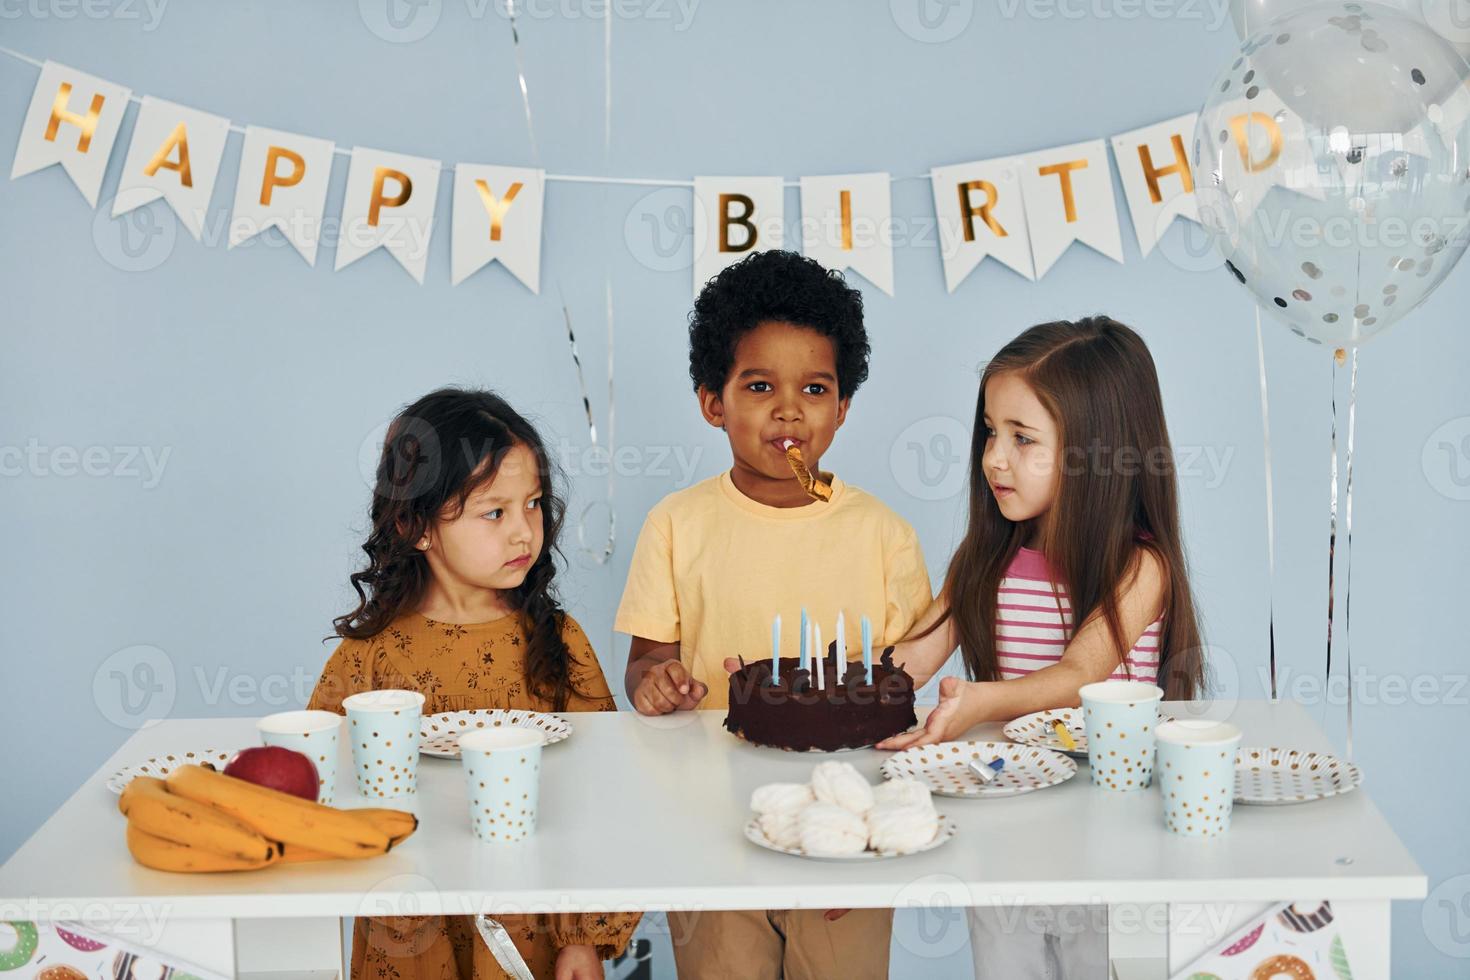 gâteau de vacances. les enfants célébrant la fête d'anniversaire à l'intérieur s'amusent ensemble photo